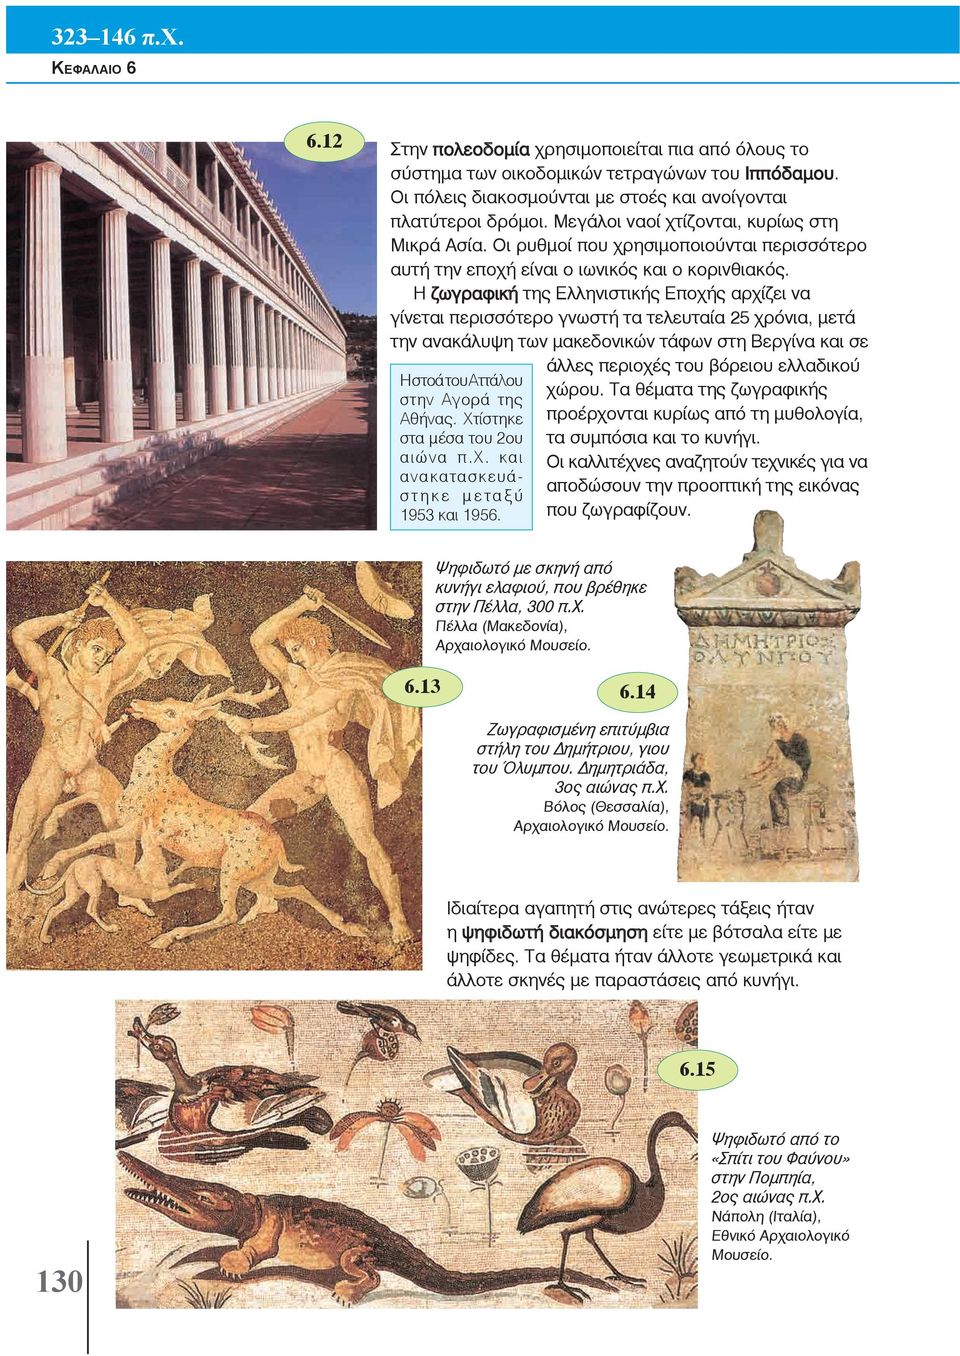 Η ζωγραφική της Ελληνιστικής Εποχής αρχίζει να γίνεται περισσότερο γνωστή τα τελευταία 25 χρόνια, μετά την ανακάλυψη των μακεδονικών τάφων στη Βεργίνα και σε άλλες περιοχές του βόρειου ελλαδικού Η